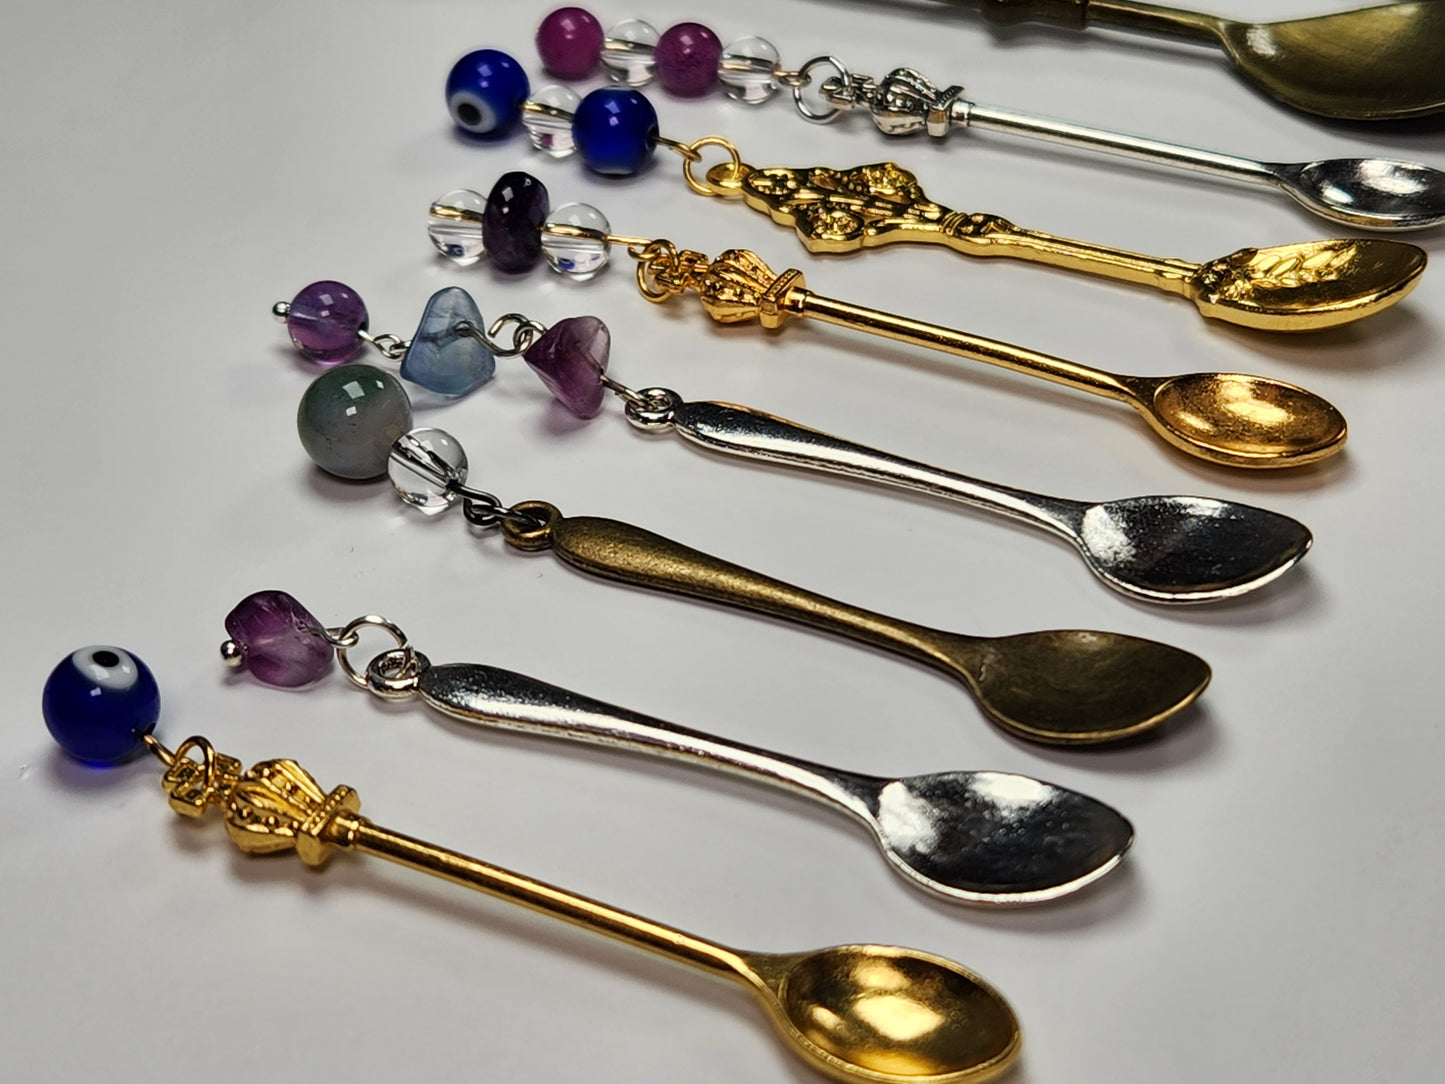 Gemstone Teaspoons, Crystal Spoons, Herb Spoons